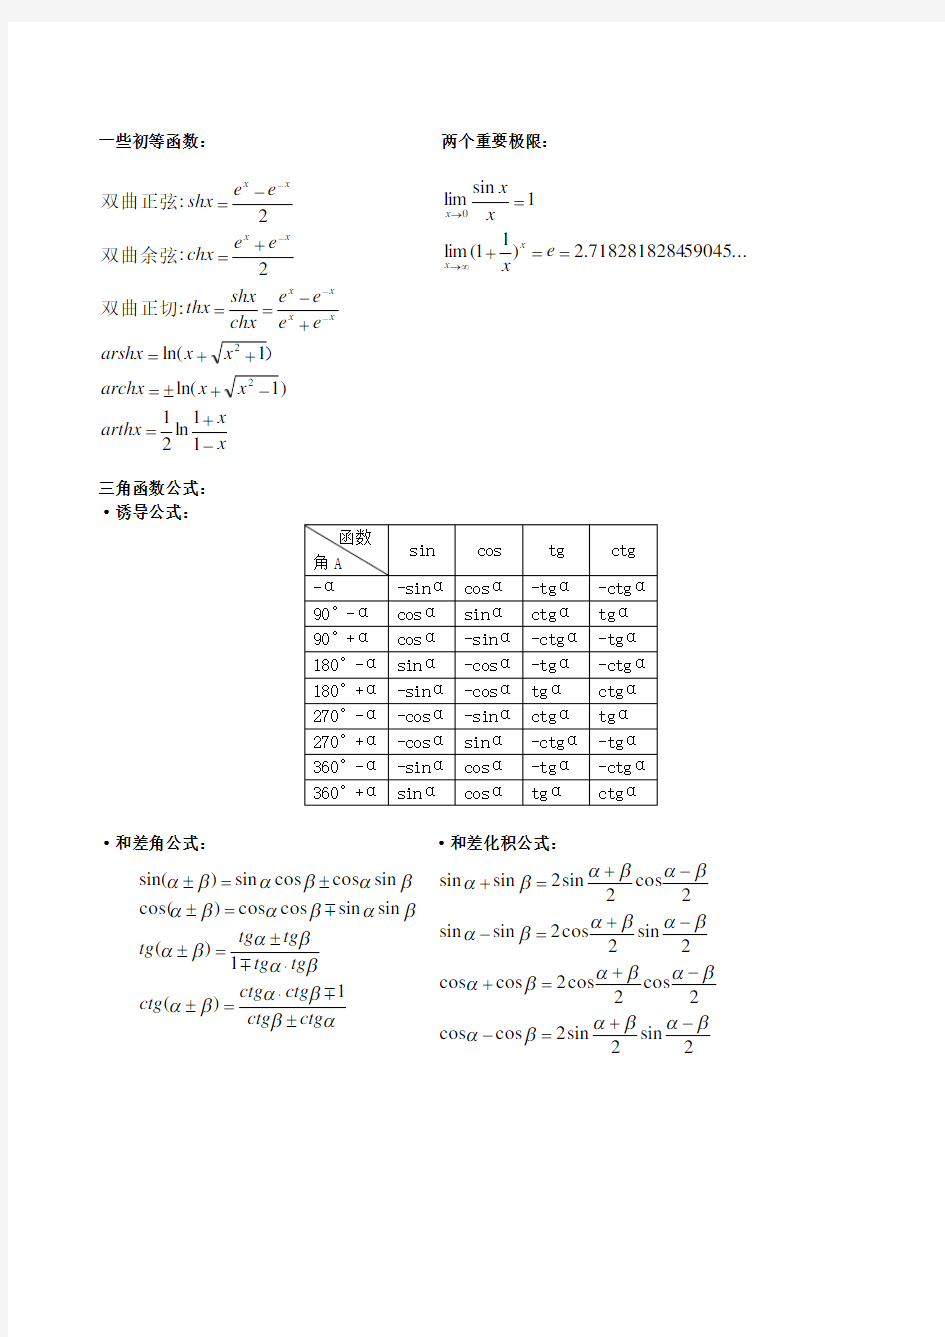 考研数学一公式手册大全(整理全面)